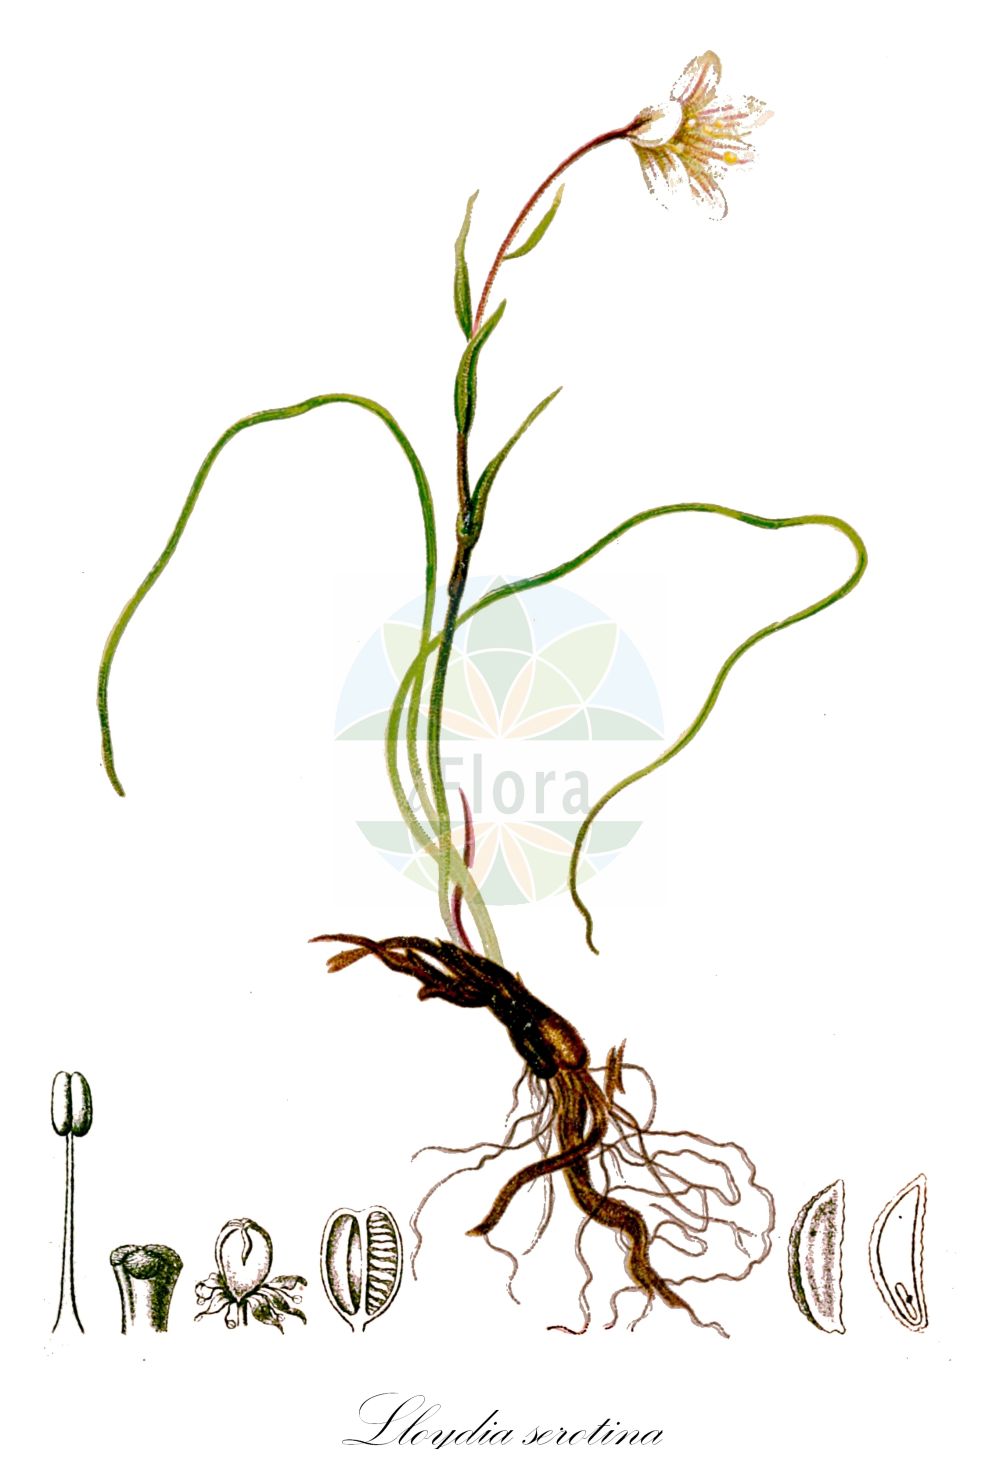 Historische Abbildung von Lloydia serotina (Späte Faltenlilie - Snowdon Lily). Das Bild zeigt Blatt, Bluete, Frucht und Same. ---- Historical Drawing of Lloydia serotina (Späte Faltenlilie - Snowdon Lily). The image is showing leaf, flower, fruit and seed.(Lloydia serotina,Späte Faltenlilie,Snowdon Lily,Anthericum serotinum,Bulbocodium autumnale,Bulbocodium serotinum,Cronyxium serotinum,Gagea serotina,Lloydia serotina,Ornithogalum serotinum,Phalangium serotinum,Rhabdocrinum serotinum,Spaete Faltenlilie,Snowdon Lily,Alpine Lily,Common Alplily,Lloydia,Faltenlilie,Alpine Lily,Liliaceae,Liliengewächse,Lily family,Blatt,Bluete,Frucht,Same,leaf,flower,fruit,seed,Hartinger & von Dalla Torre (1806f))